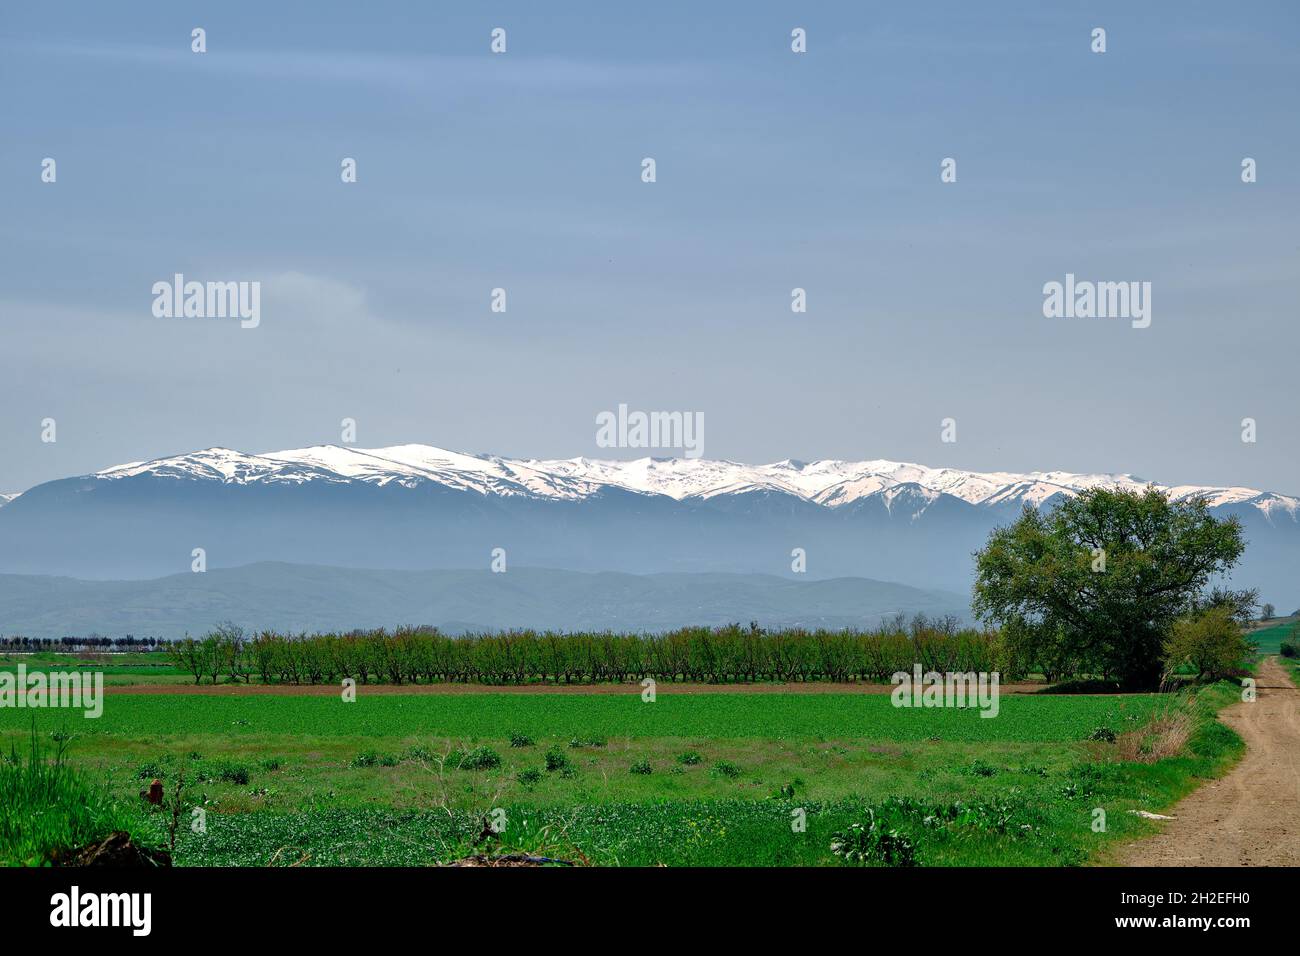 Schmutziger Weg von grünen Pflanzen in landwirtschaftlichen Feld bedeckt, herrlichen Grand Berg (uludag) Hintergrund, riesigen Schnee bleibt auf dem Gipfel des Berges Stockfoto